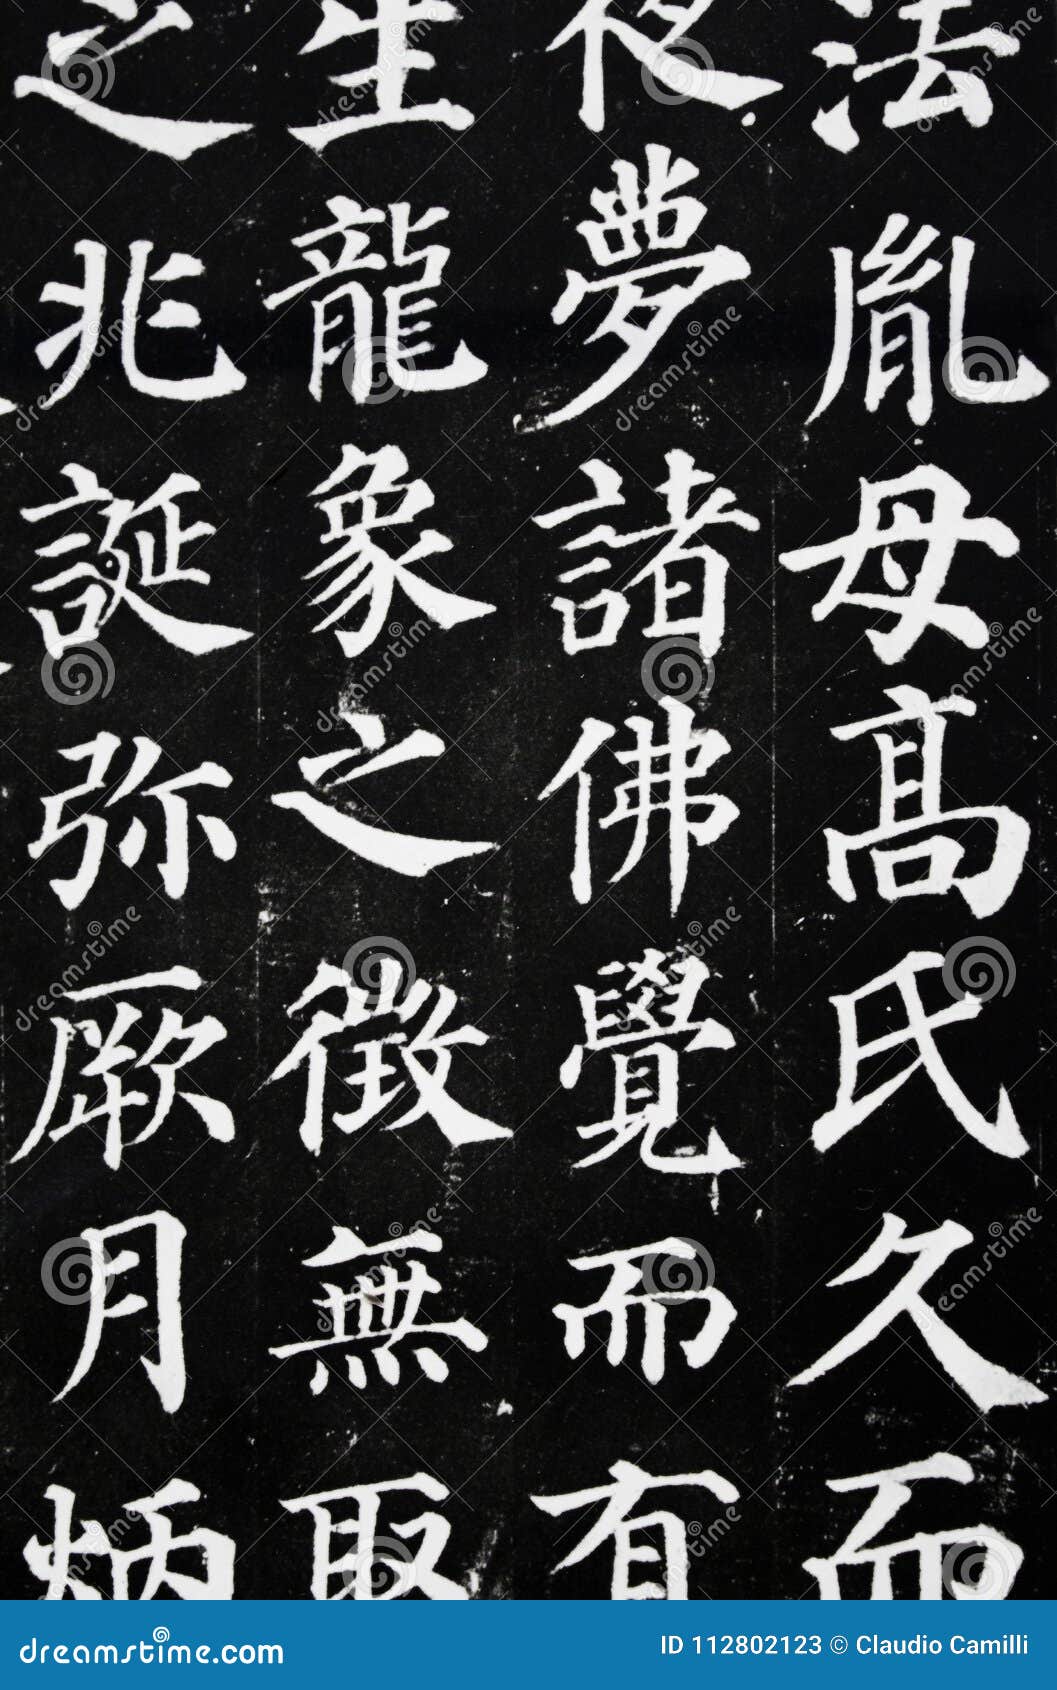 japan script on dark background